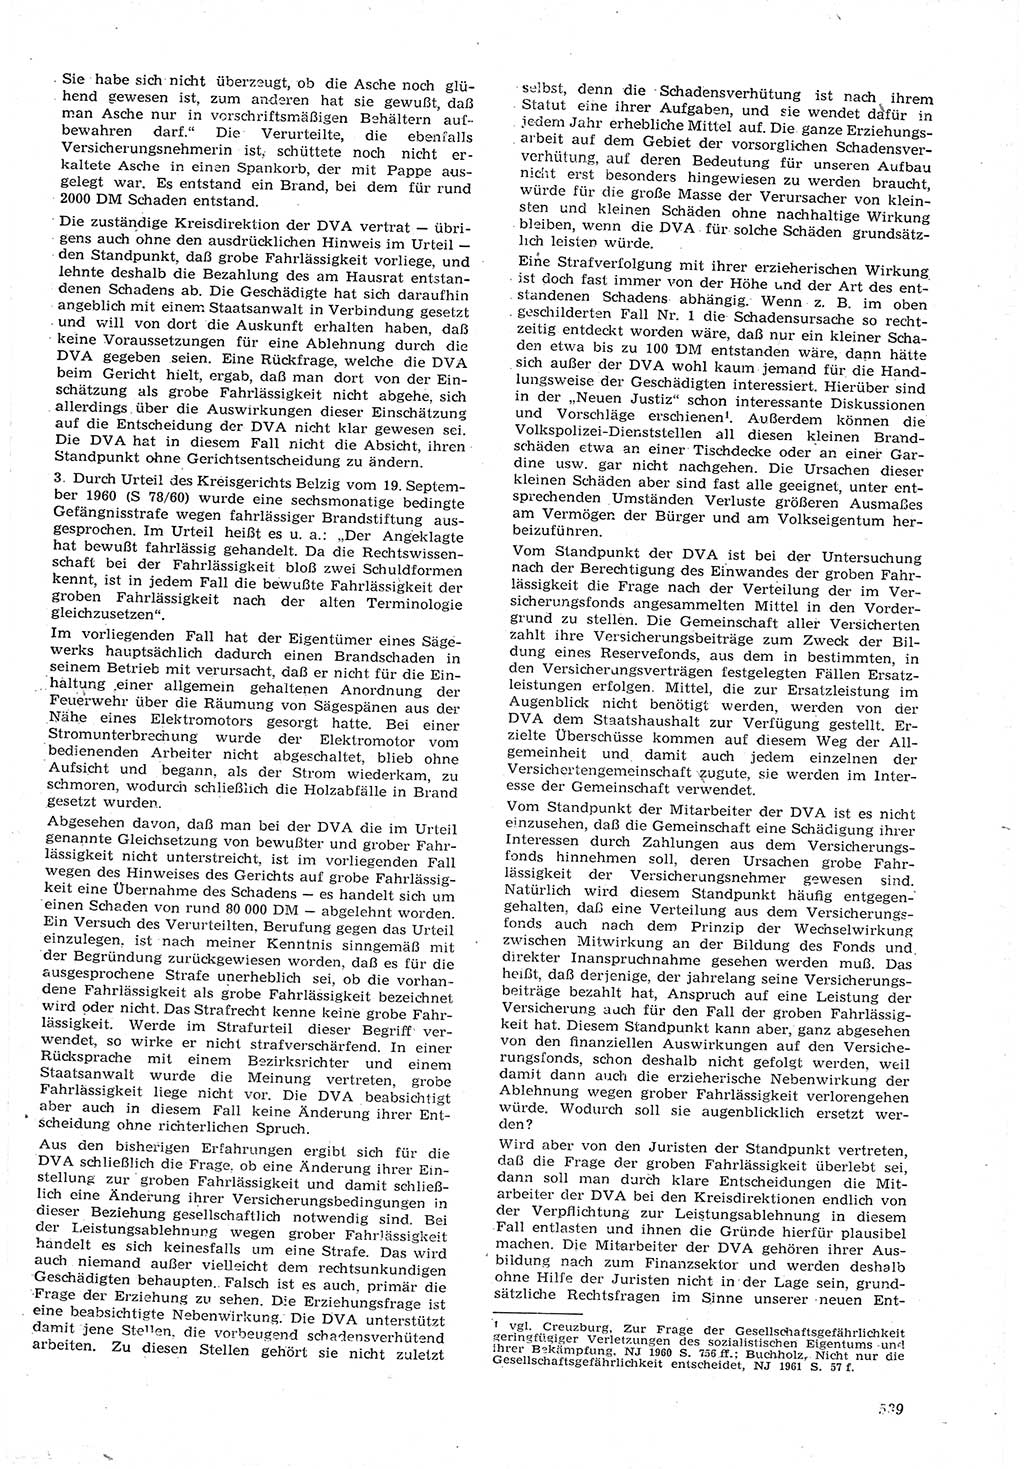 Neue Justiz (NJ), Zeitschrift für Recht und Rechtswissenschaft [Deutsche Demokratische Republik (DDR)], 15. Jahrgang 1961, Seite 539 (NJ DDR 1961, S. 539)